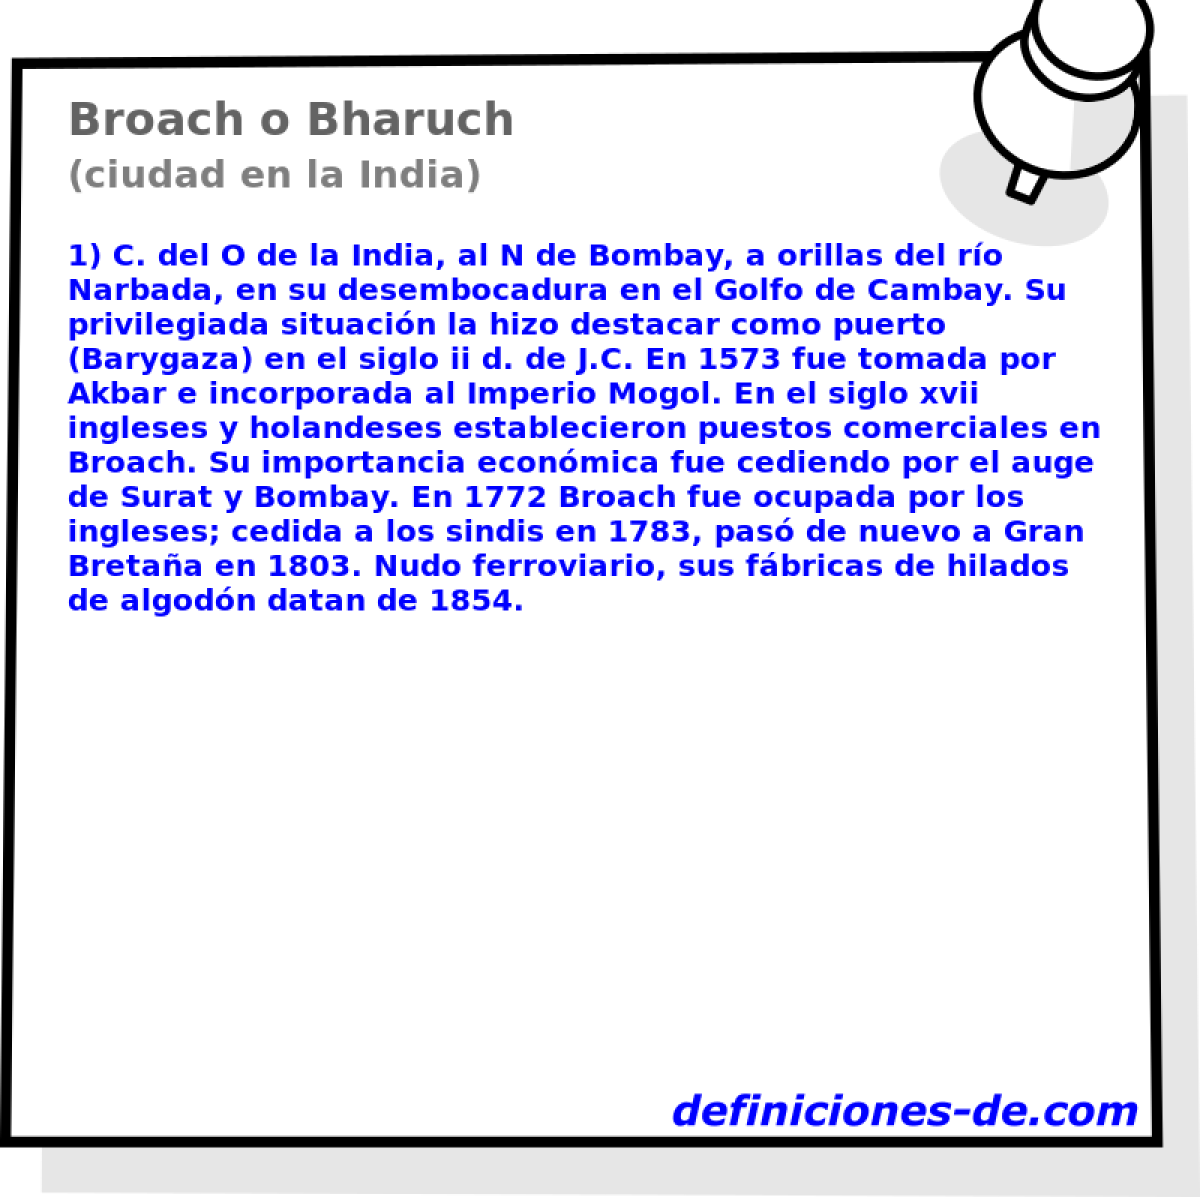 Broach o Bharuch (ciudad en la India)